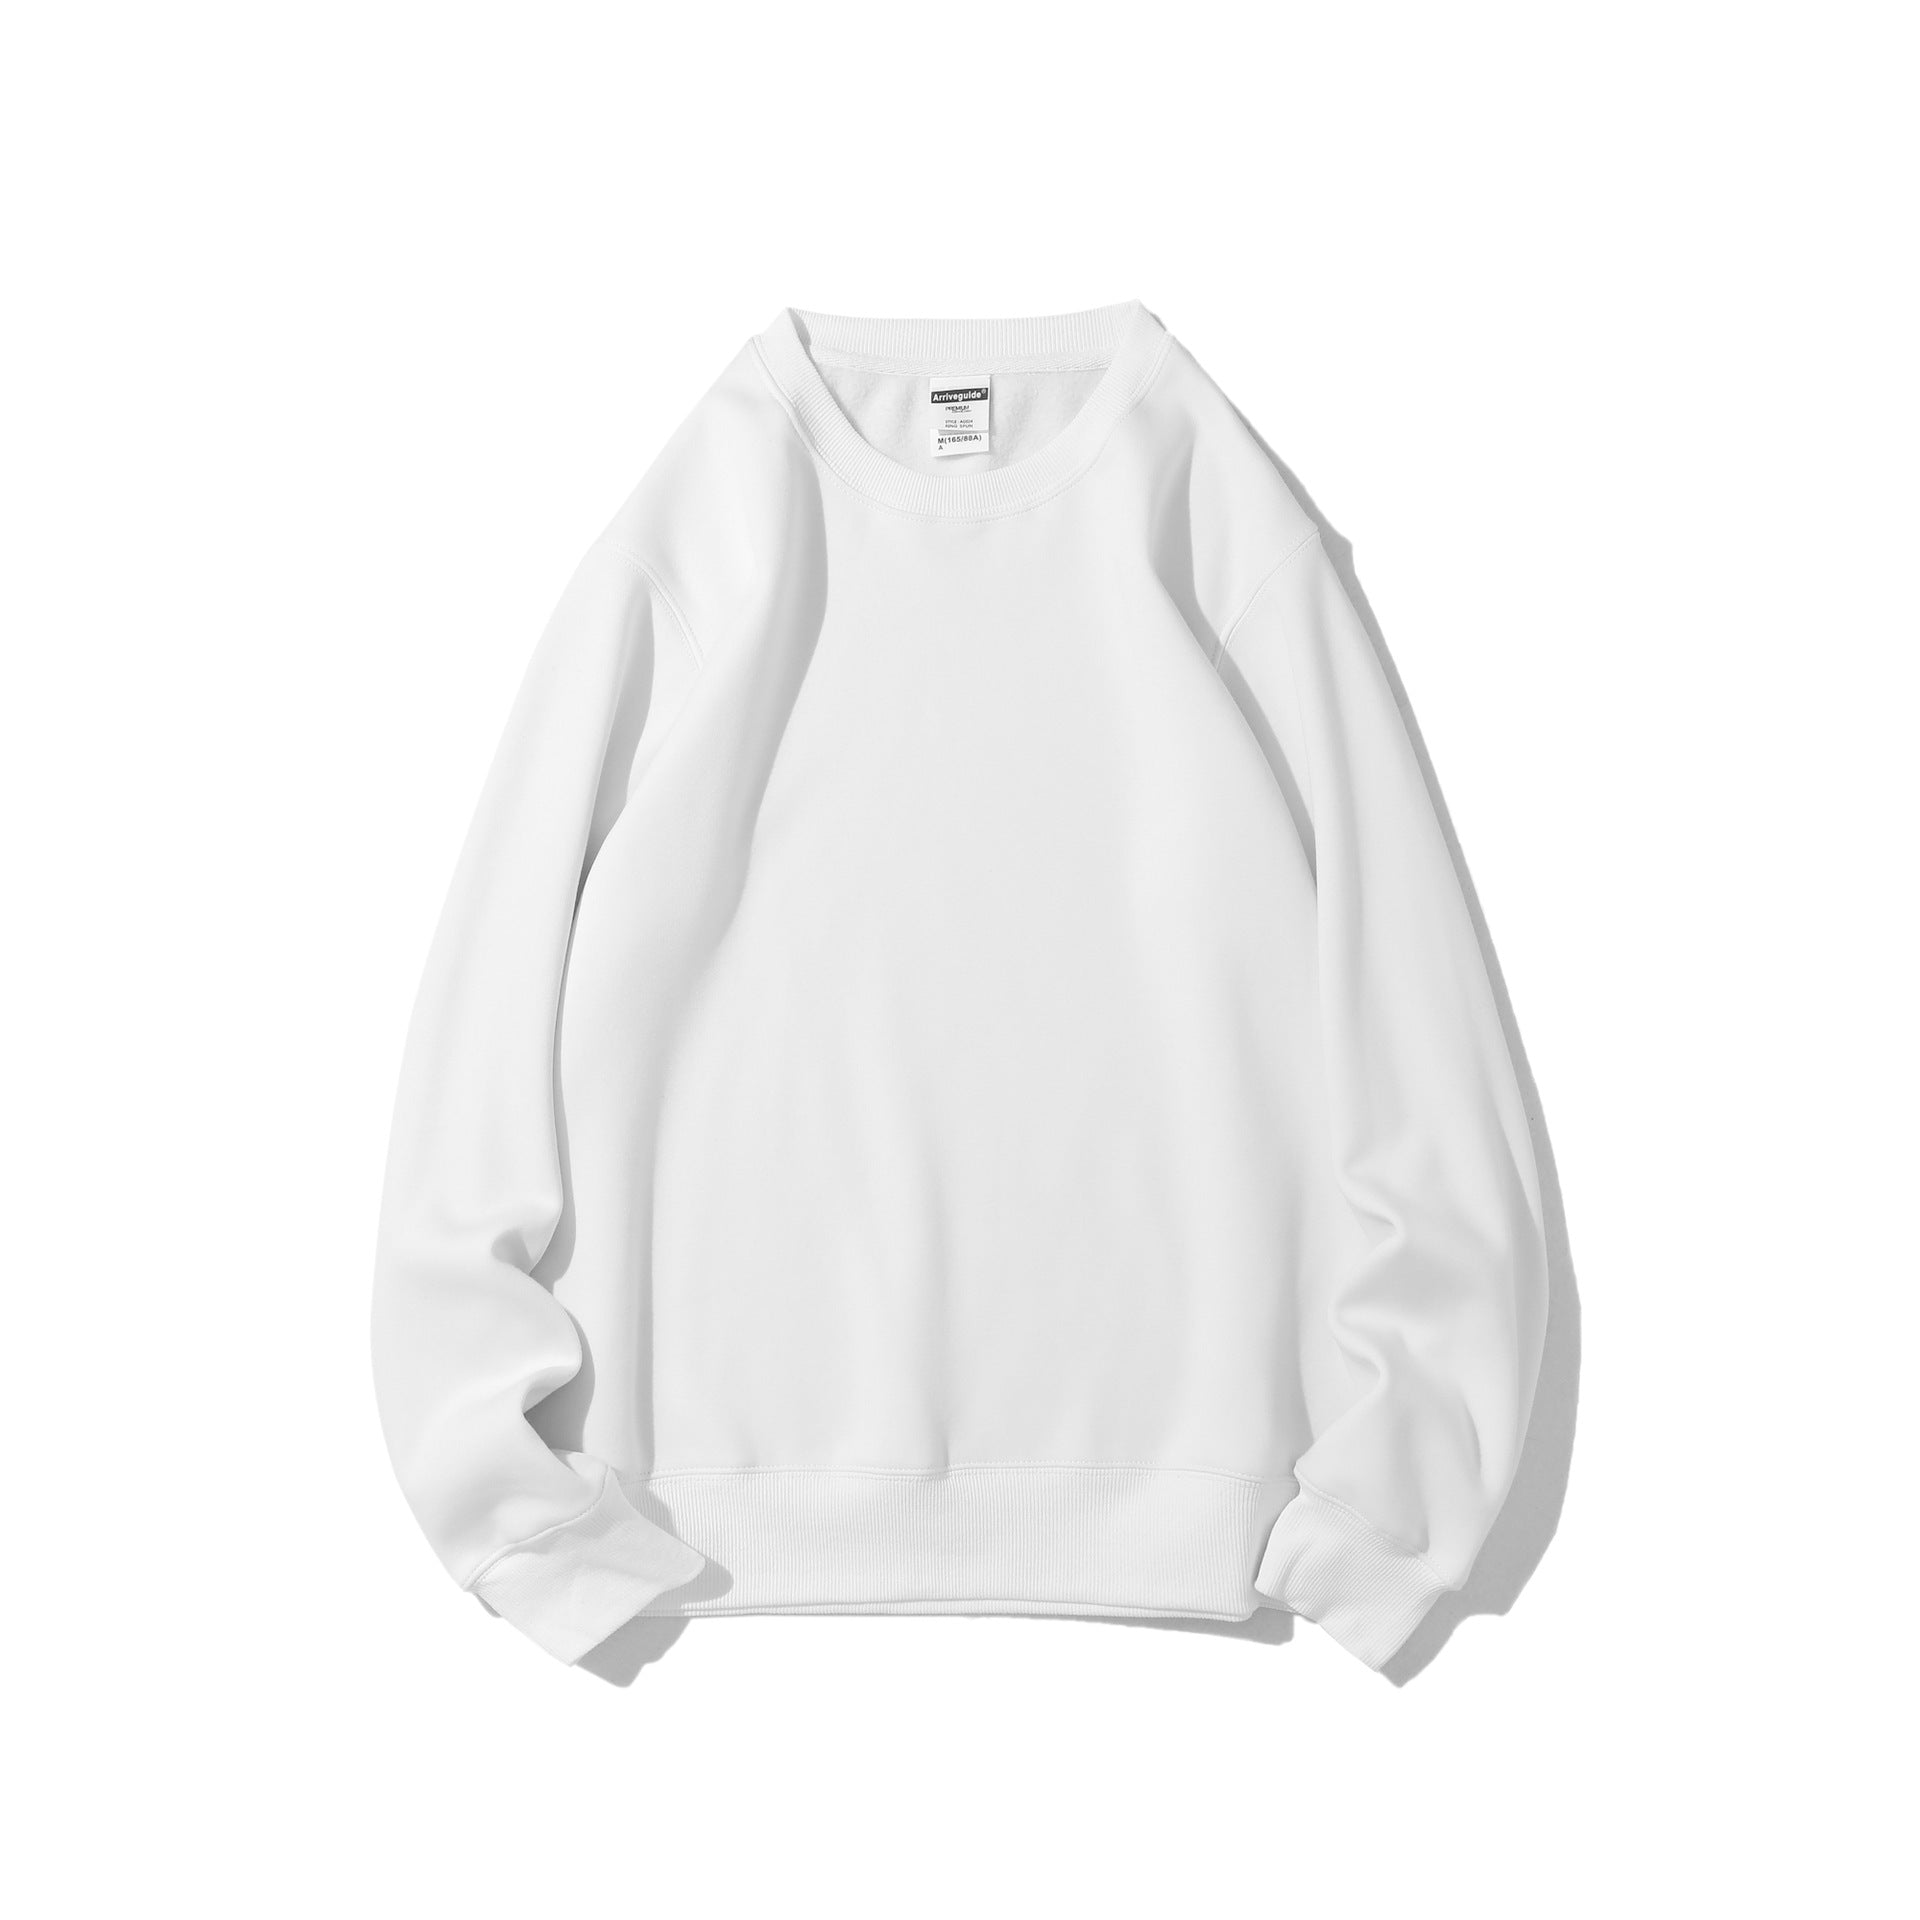 JENNIE 420g Polar Fleece Round Neck Pullover Sweater